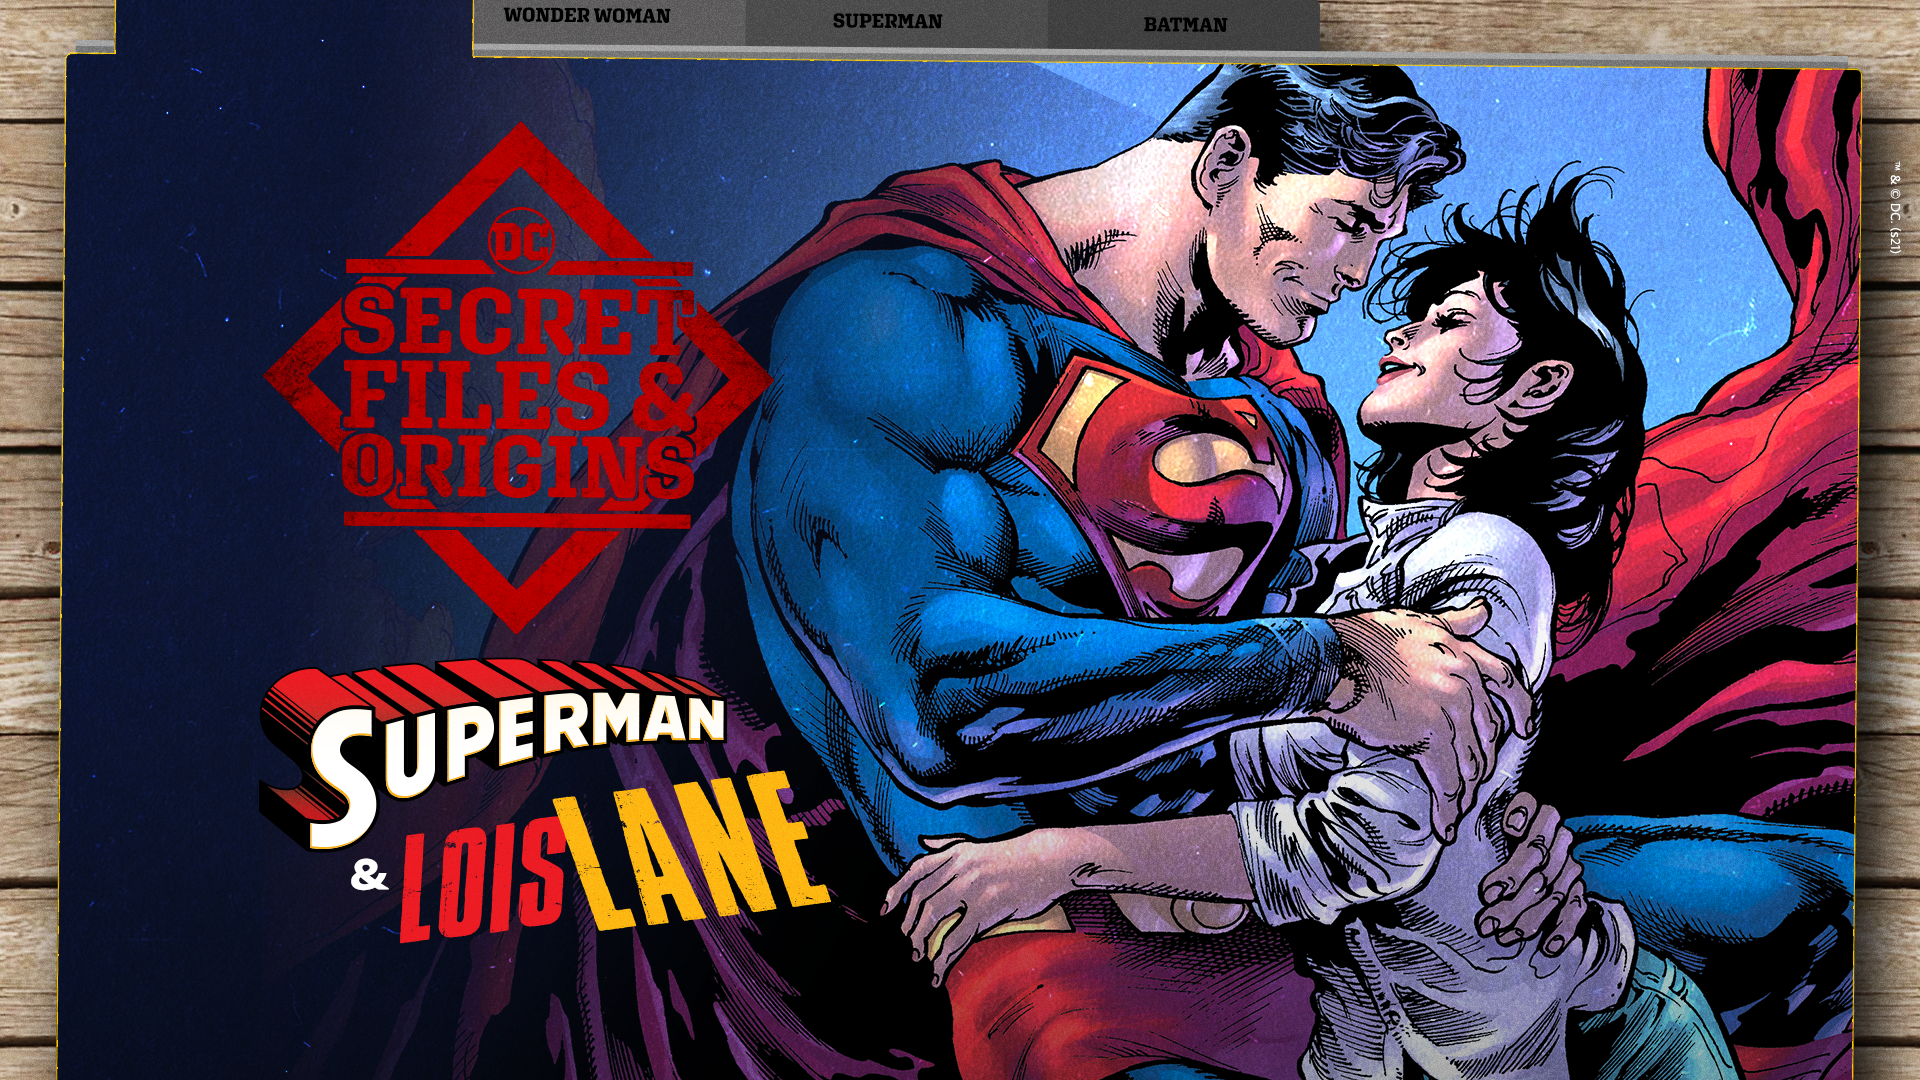 DCComics_Superman&Lois101_01a_v1.png